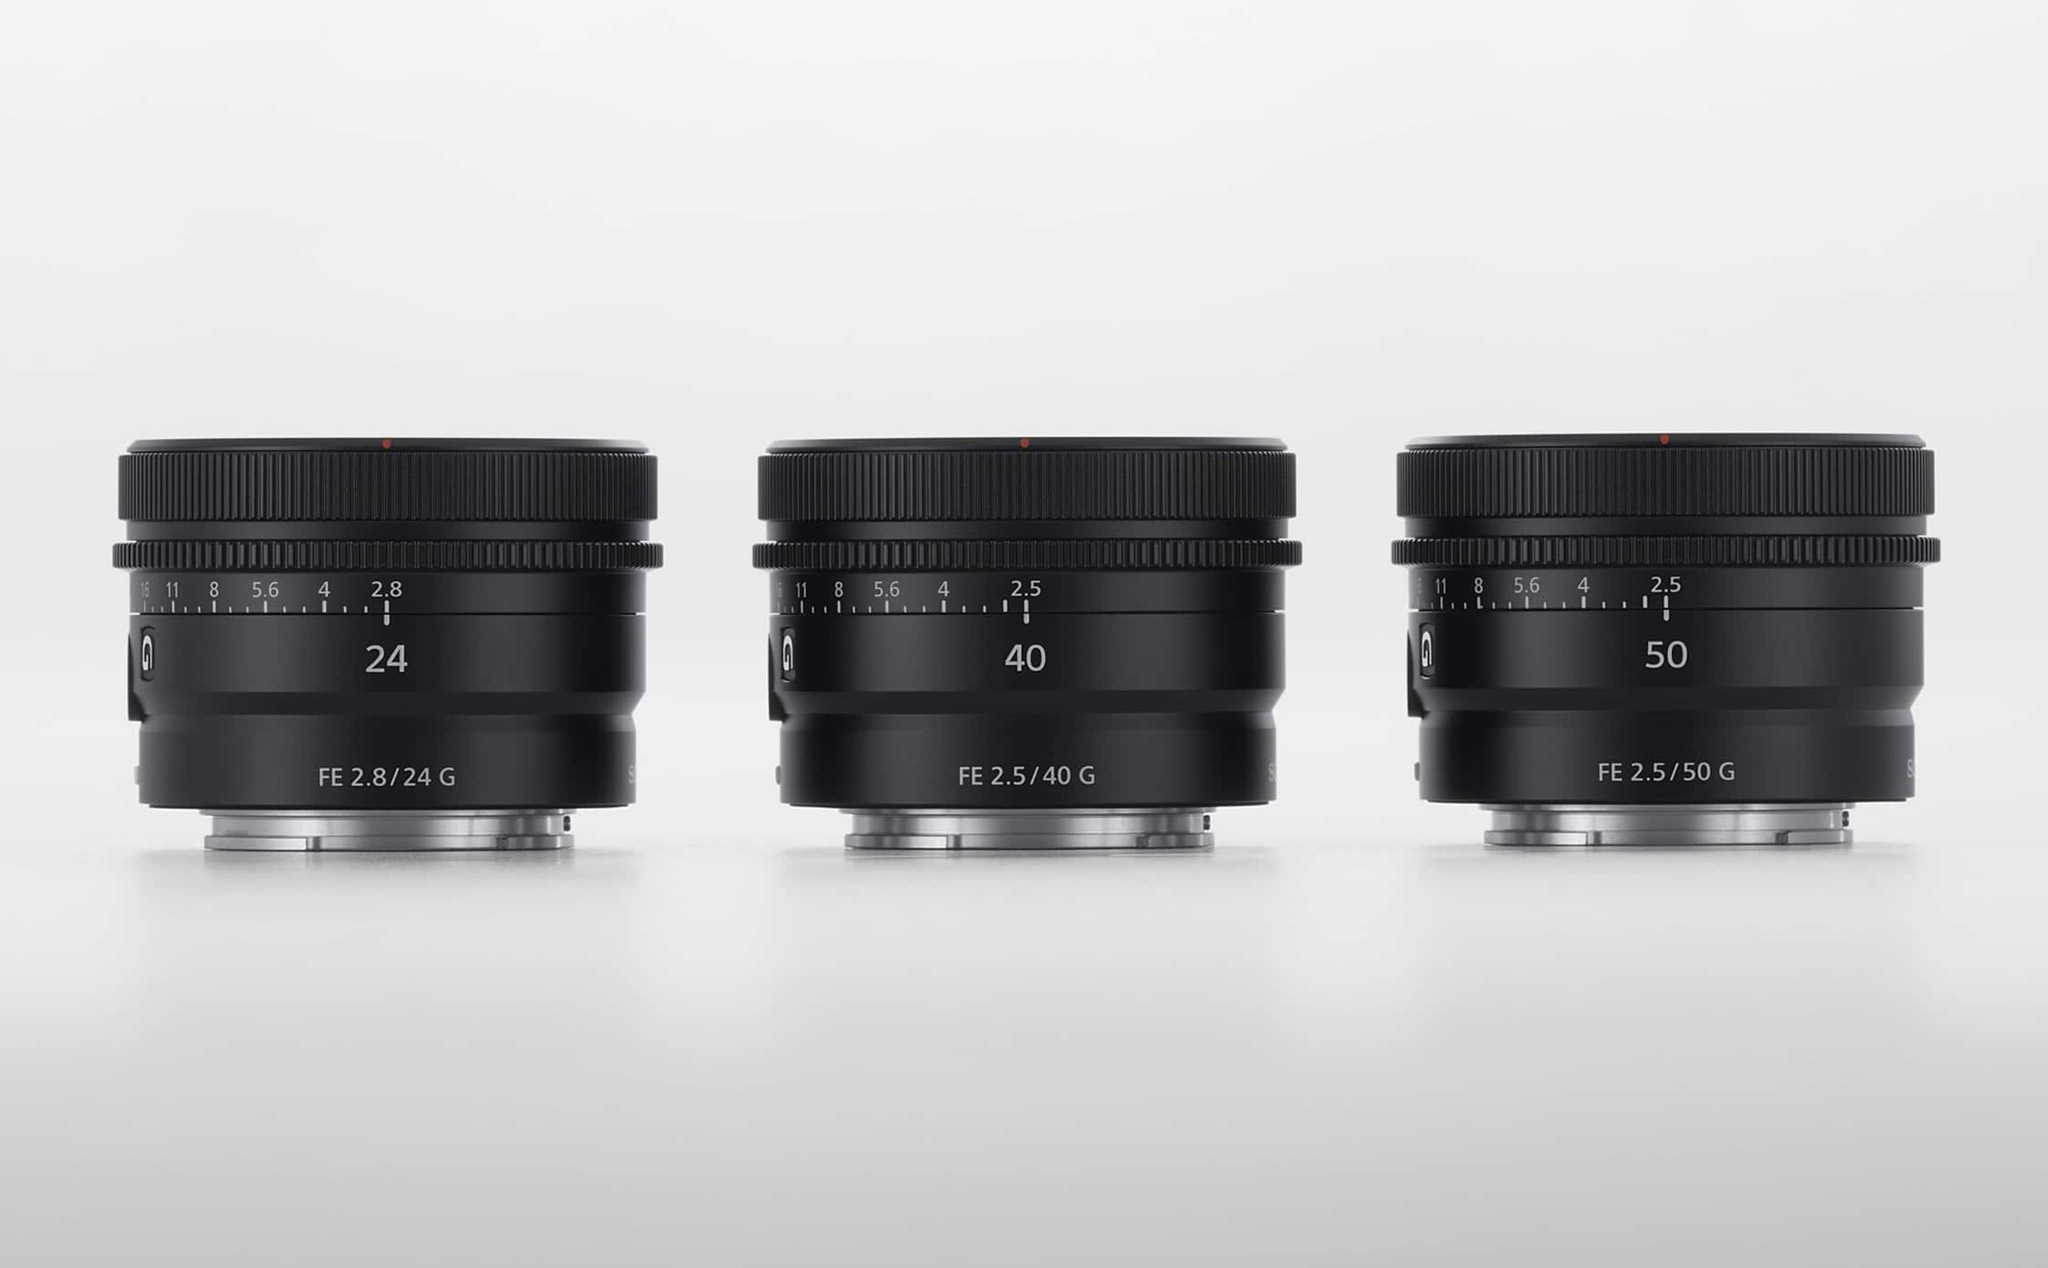 Sony ra mắt 3 ống kính Prime: 24mm F2.8 G, 40mm F2.5 G, 50mm F2.5 G có kích thước bằng nhau